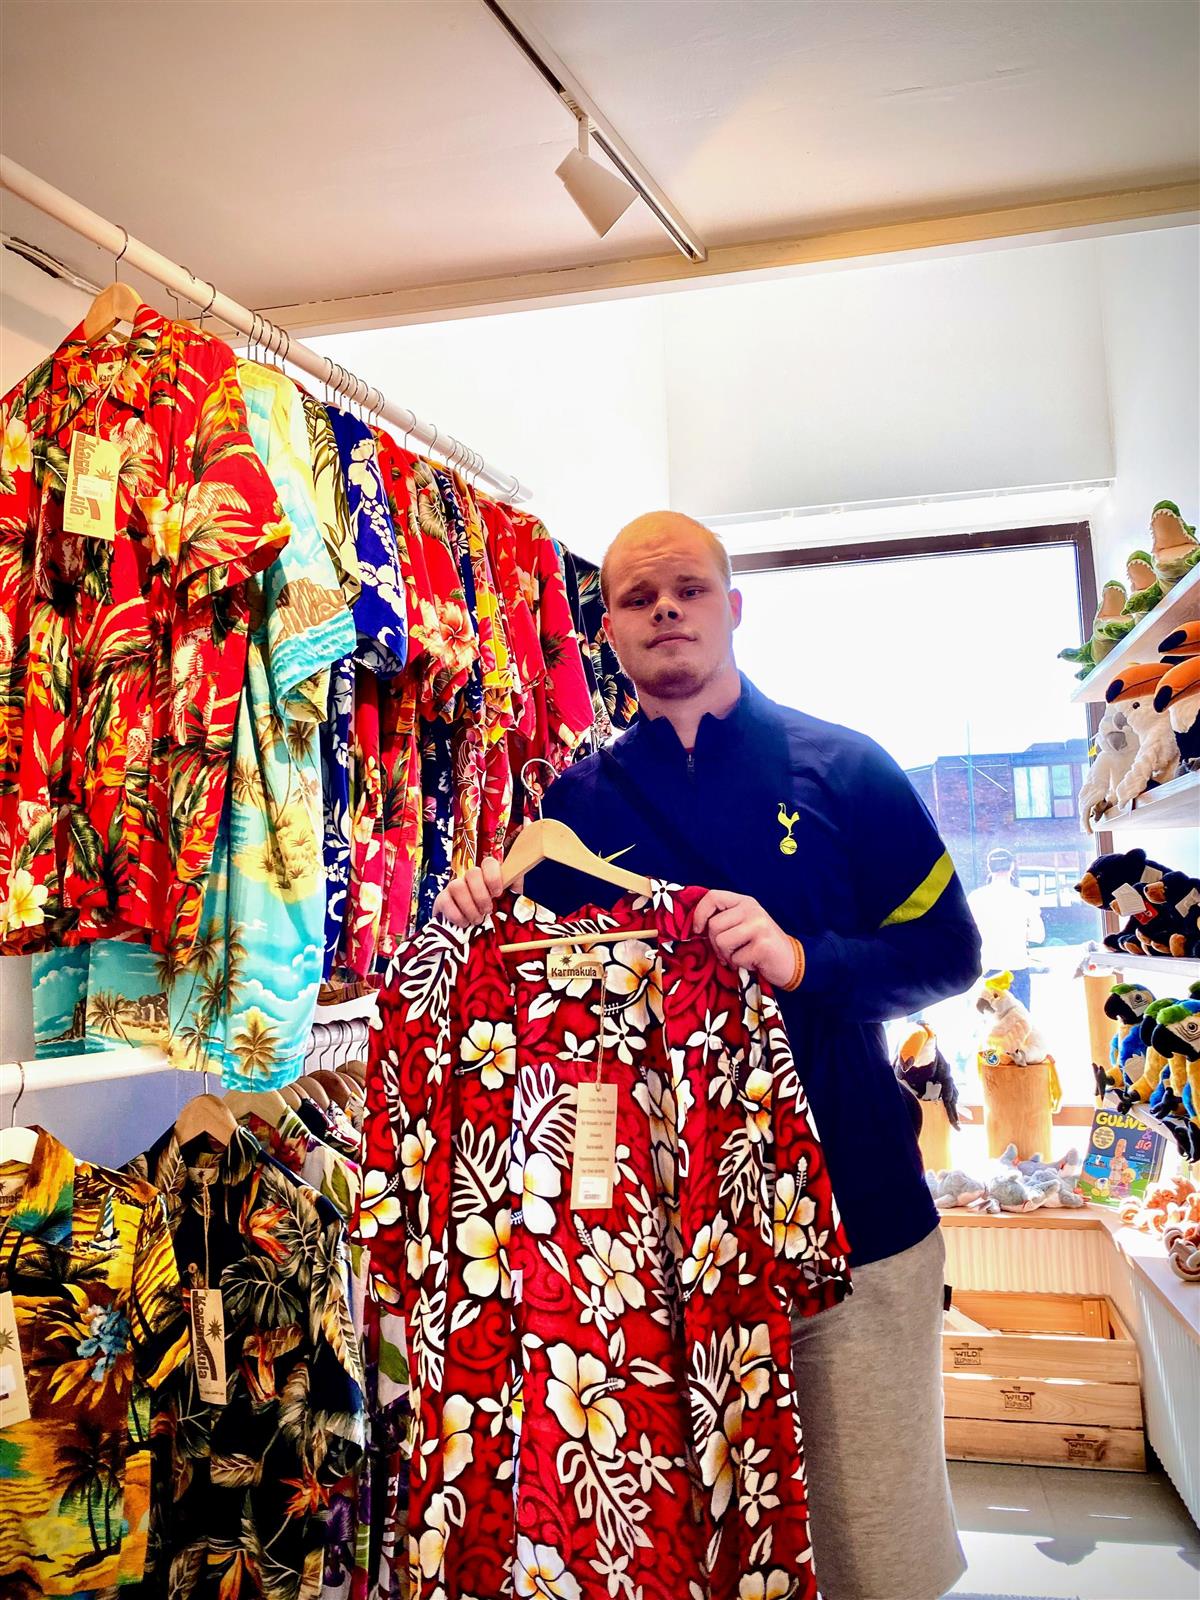 Fredrik fant Hawaii-skjorter i suvenirbutikken - Klikk for stort bilde